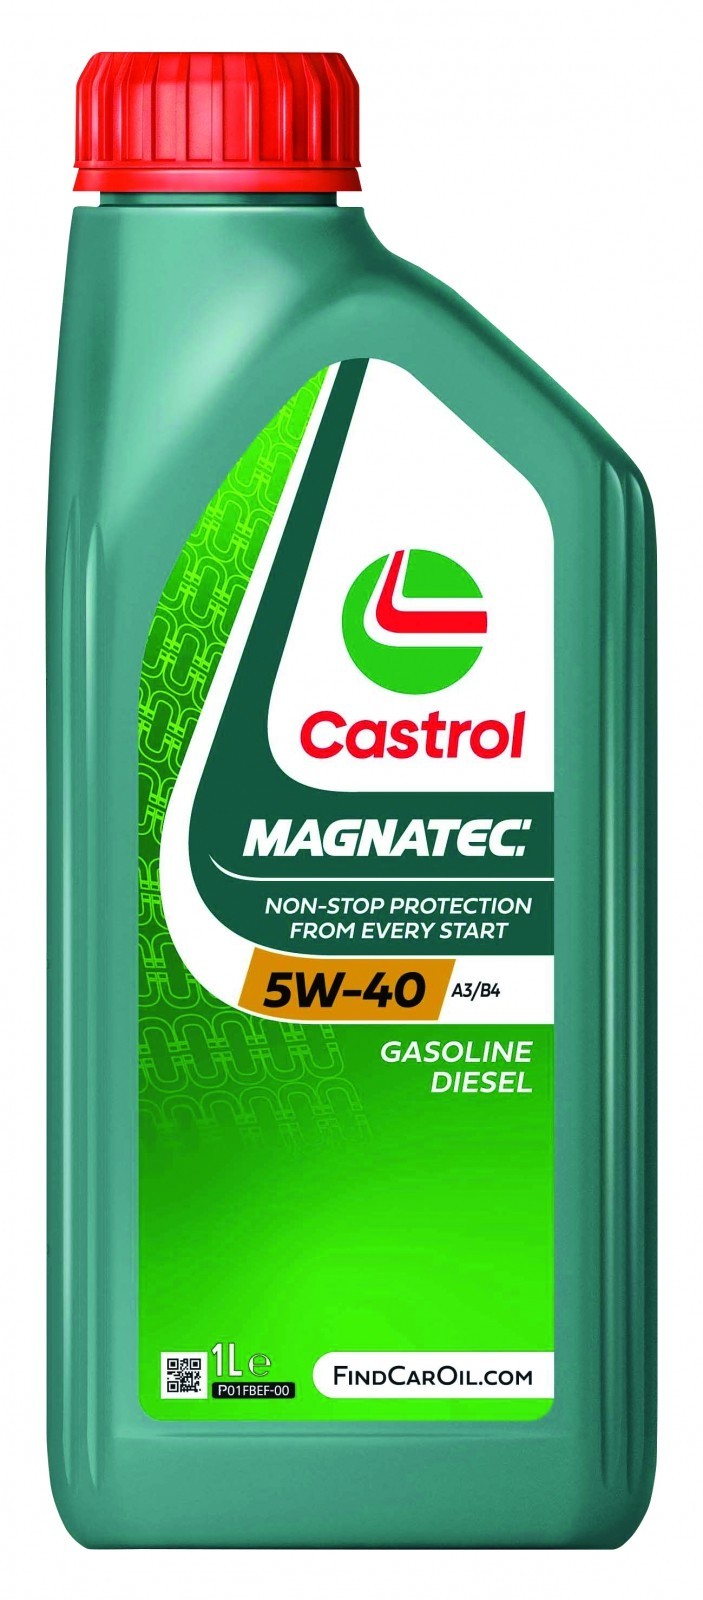 CASTROL Castrol Magnatec 5W-40 A3/B4 1.0L